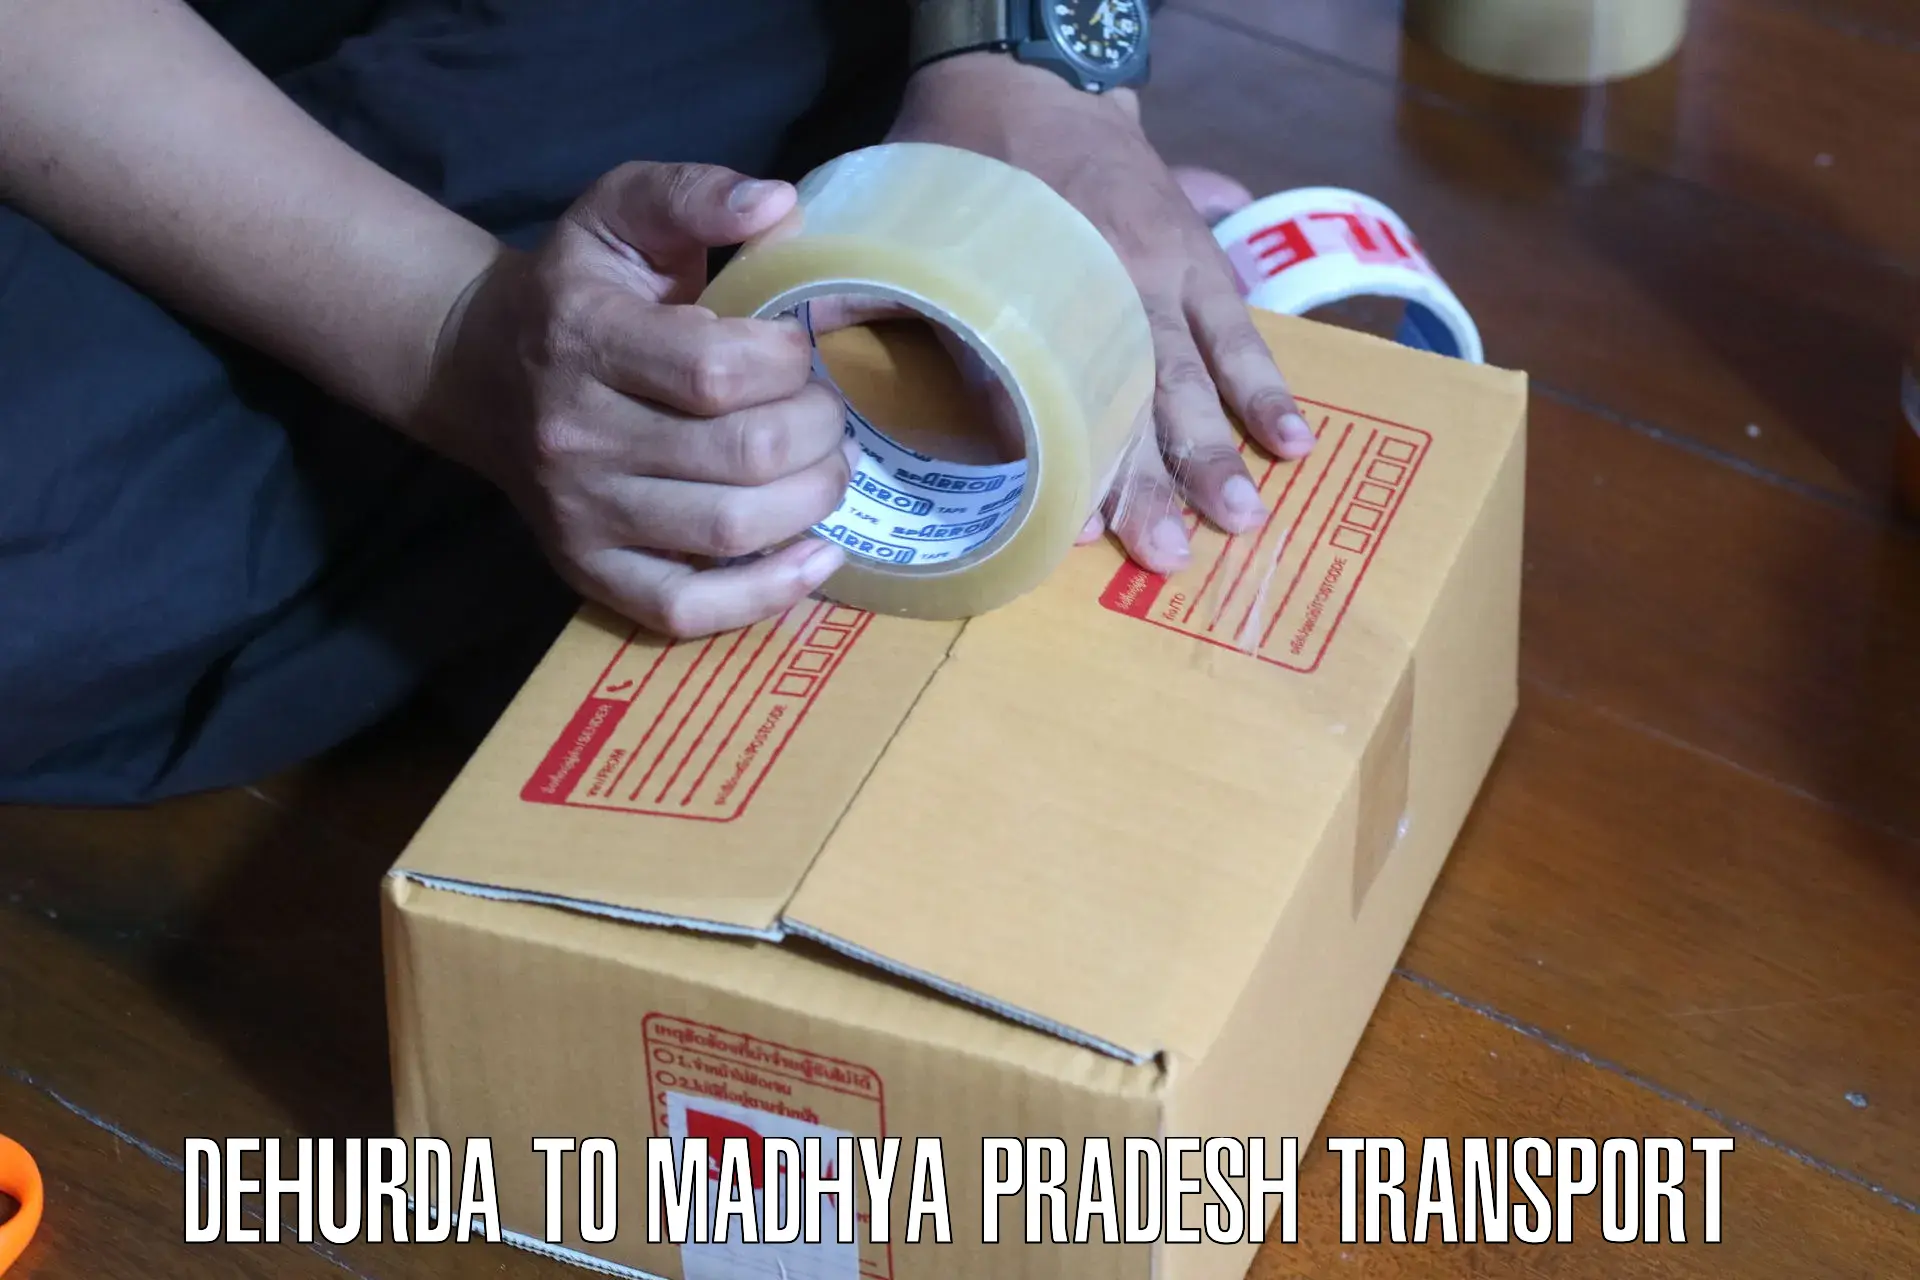 Material transport services Dehurda to Morar